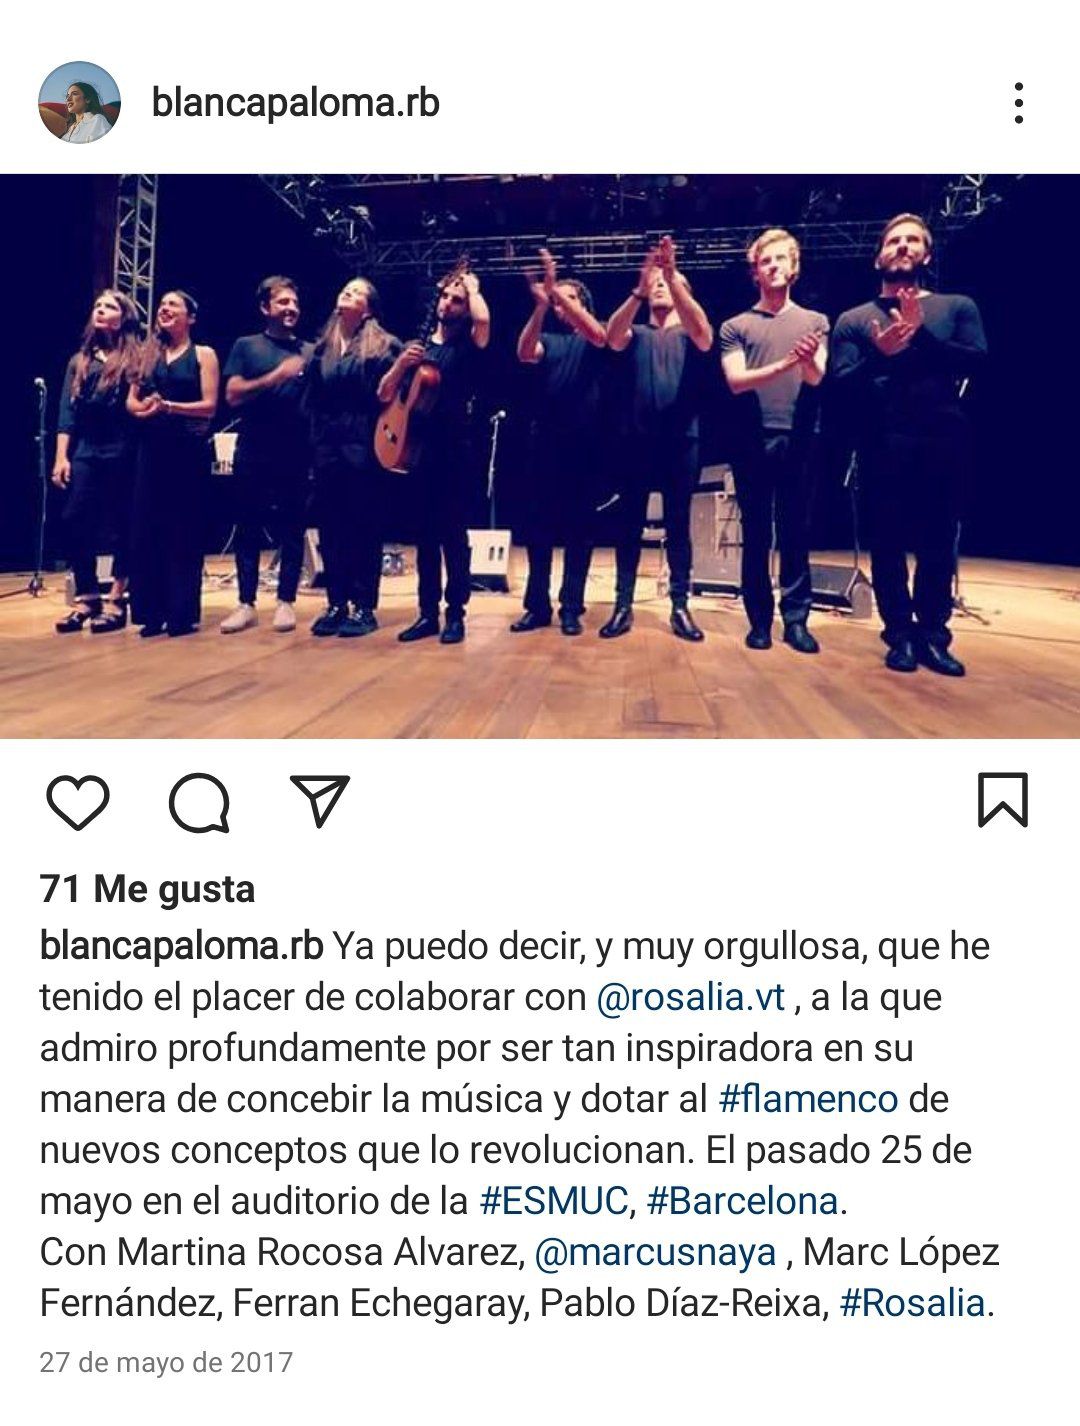 Imagen de la publicación de Instagram de Blanca Paloma cuando colaboró con Rosalía en 2017.